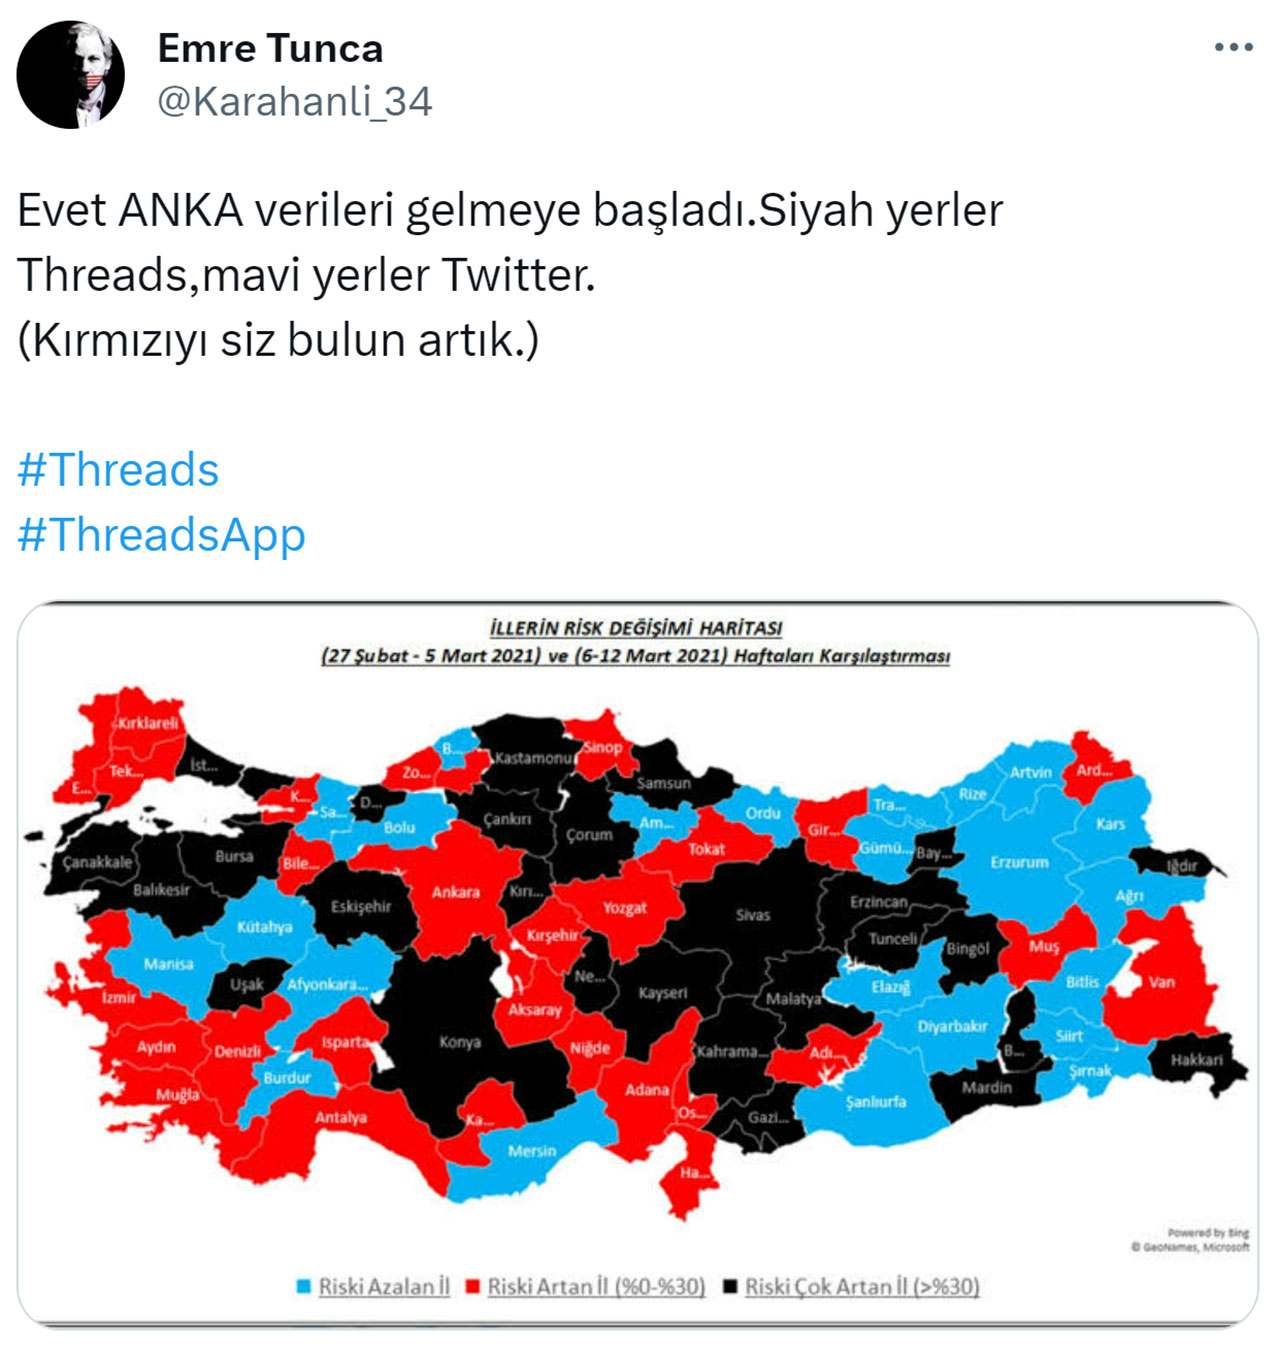 Meral Erden: Threads, Twitter'Da Gündem Oldu: İşte Twitter'In Yeni Rakibine Gelen Tepkiler 5